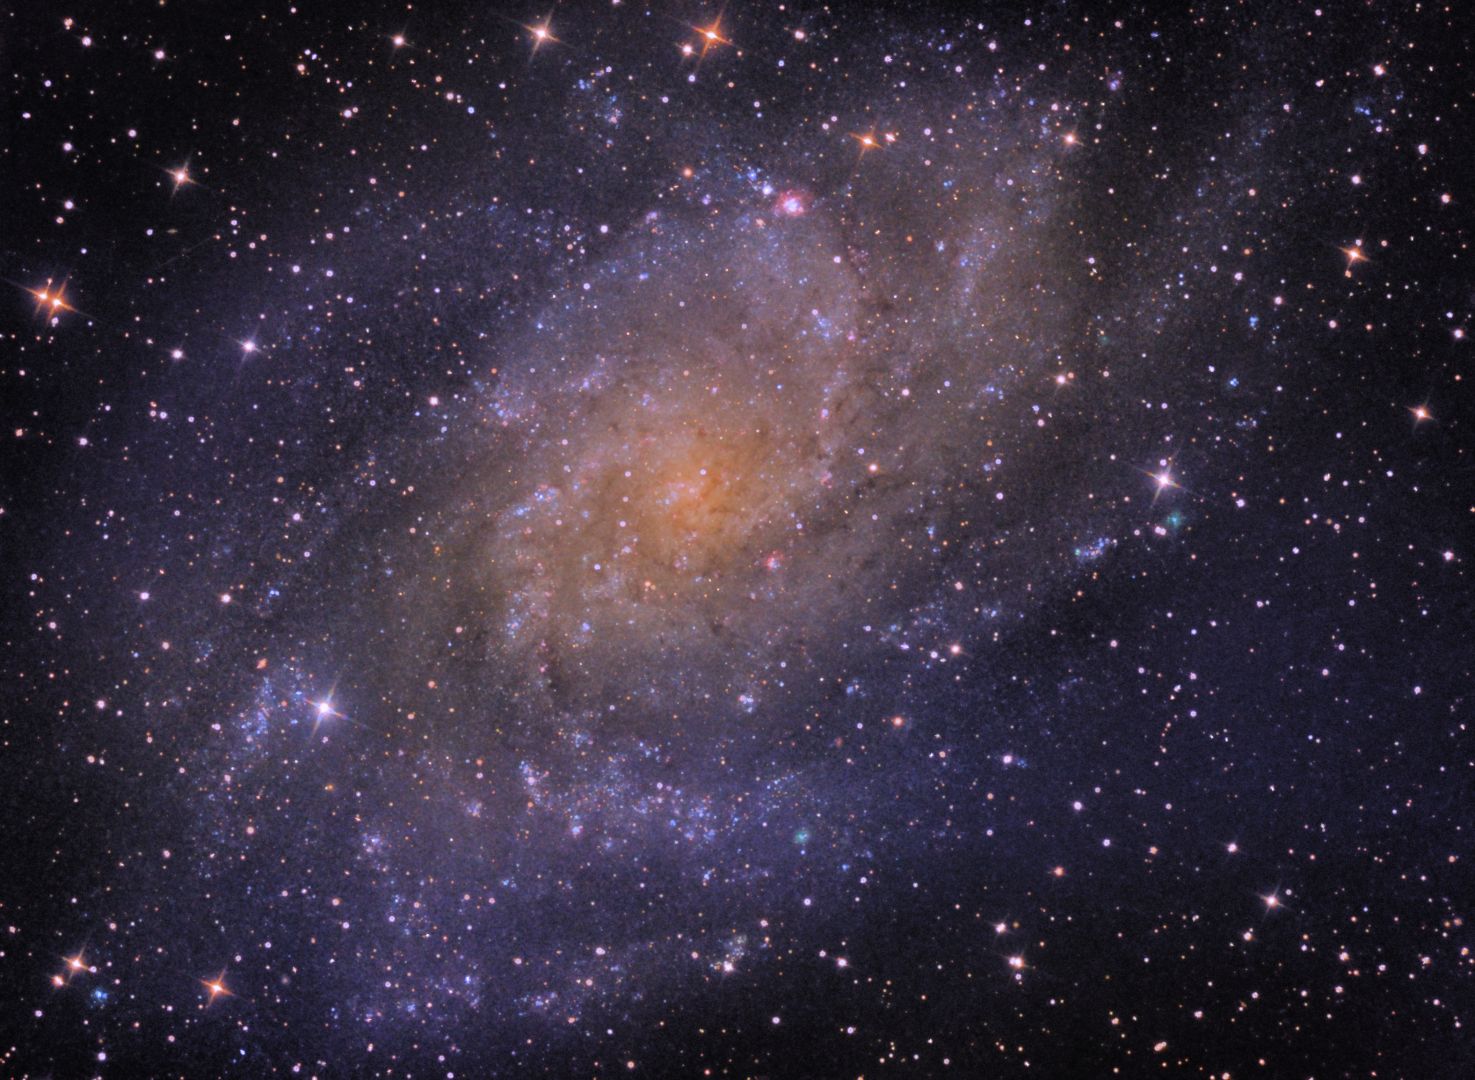 M33 Dreiecksgalaxie